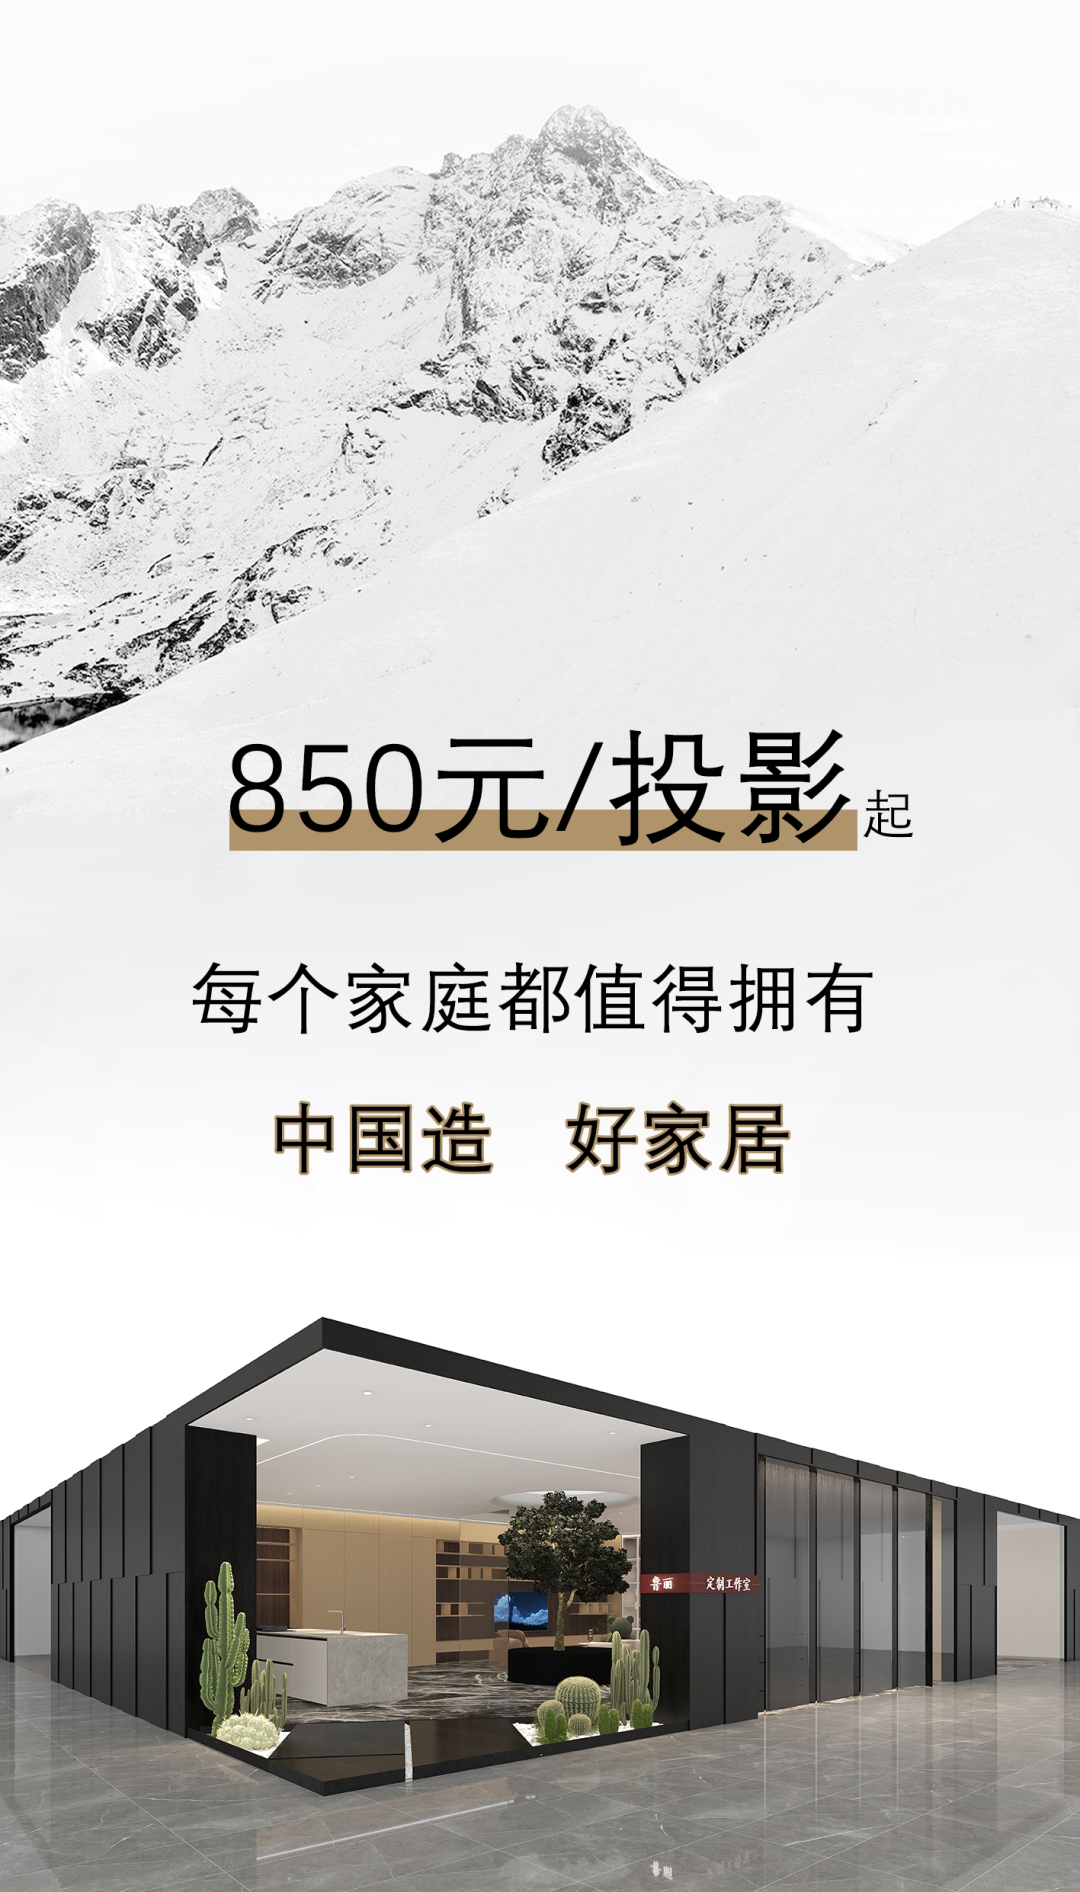 850元/投影，鲁丽家居大放价，品质保障，优惠先行，让每个家庭都能用上中国造好家居！